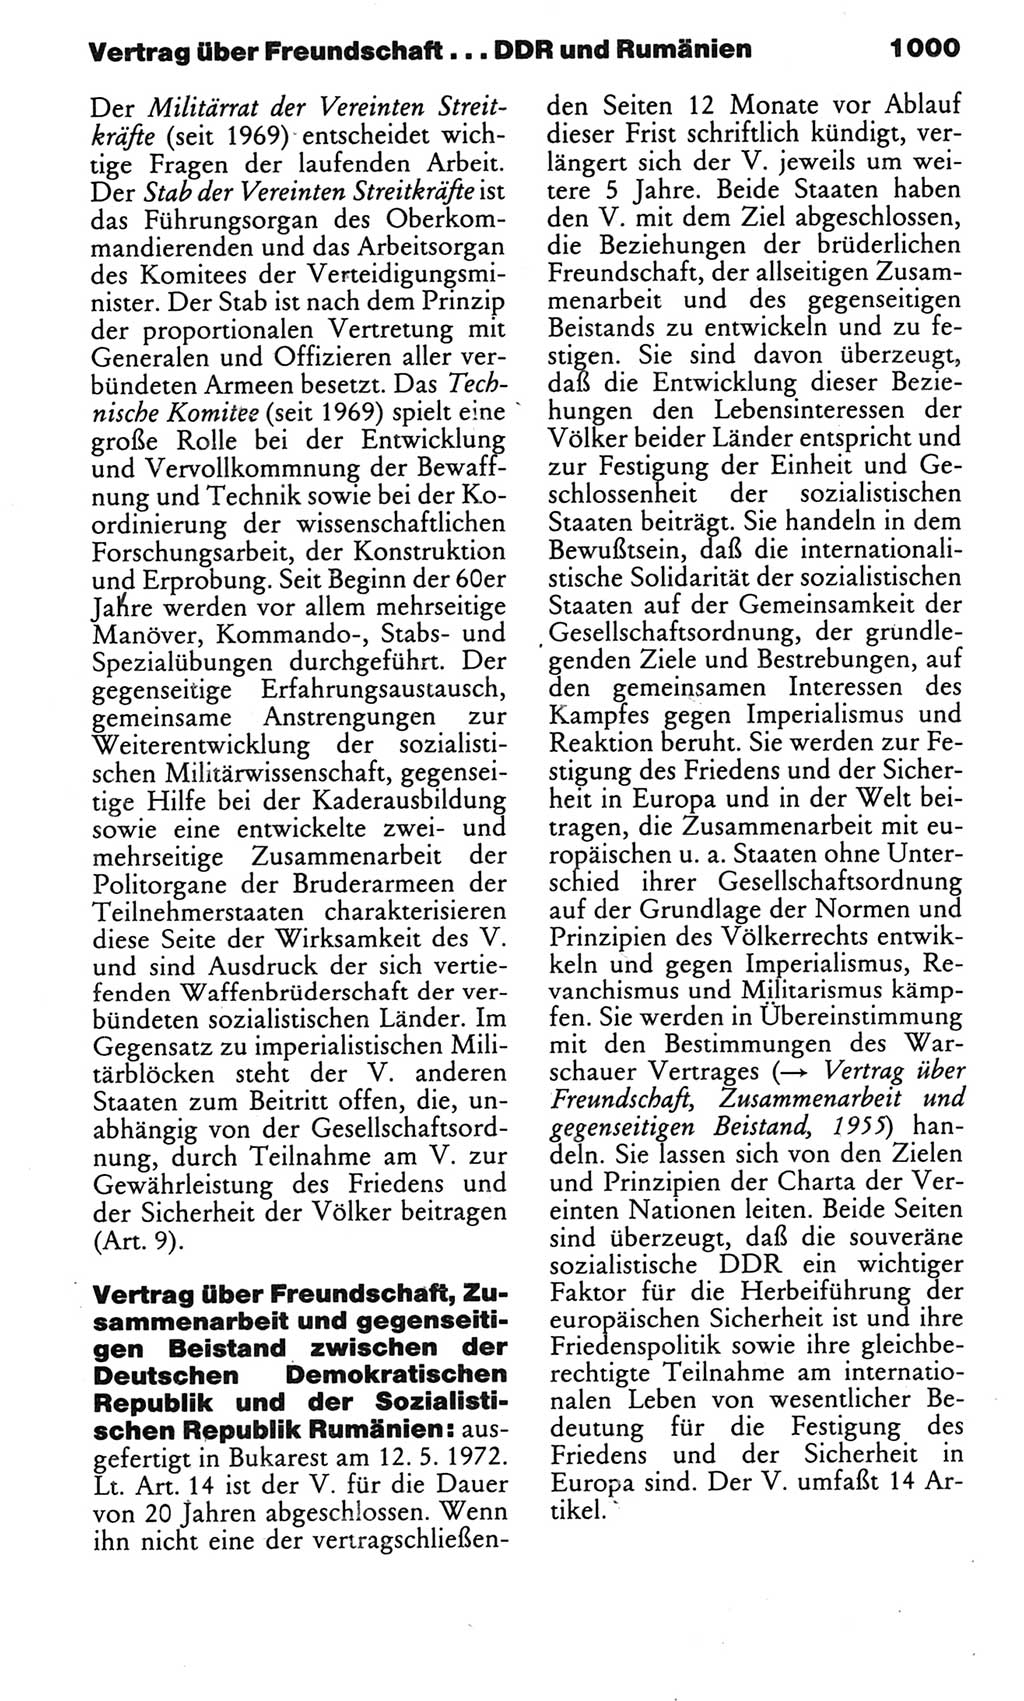 Kleines politisches Wörterbuch [Deutsche Demokratische Republik (DDR)] 1983, Seite 1000 (Kl. pol. Wb. DDR 1983, S. 1000)